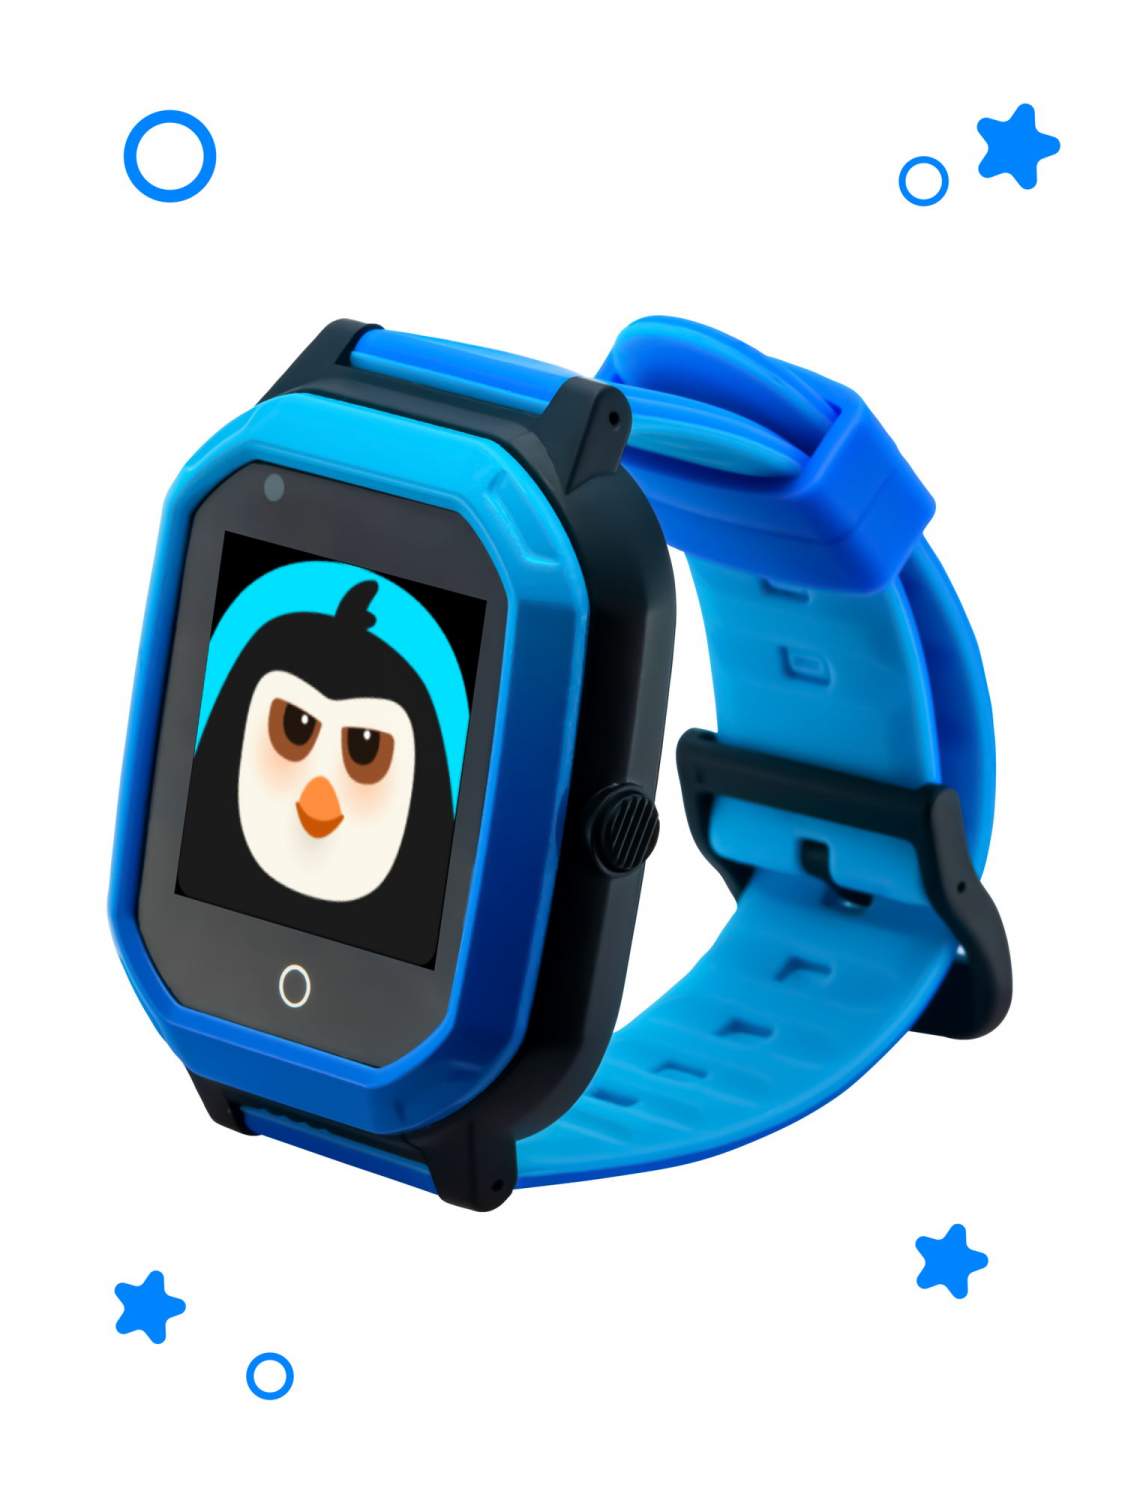 GPS часы Где мои дети Pingo Space 4G (голубой) + приложение в подарок -  отзывы покупателей на маркетплейсе Мегамаркет | Артикул: 600005833674